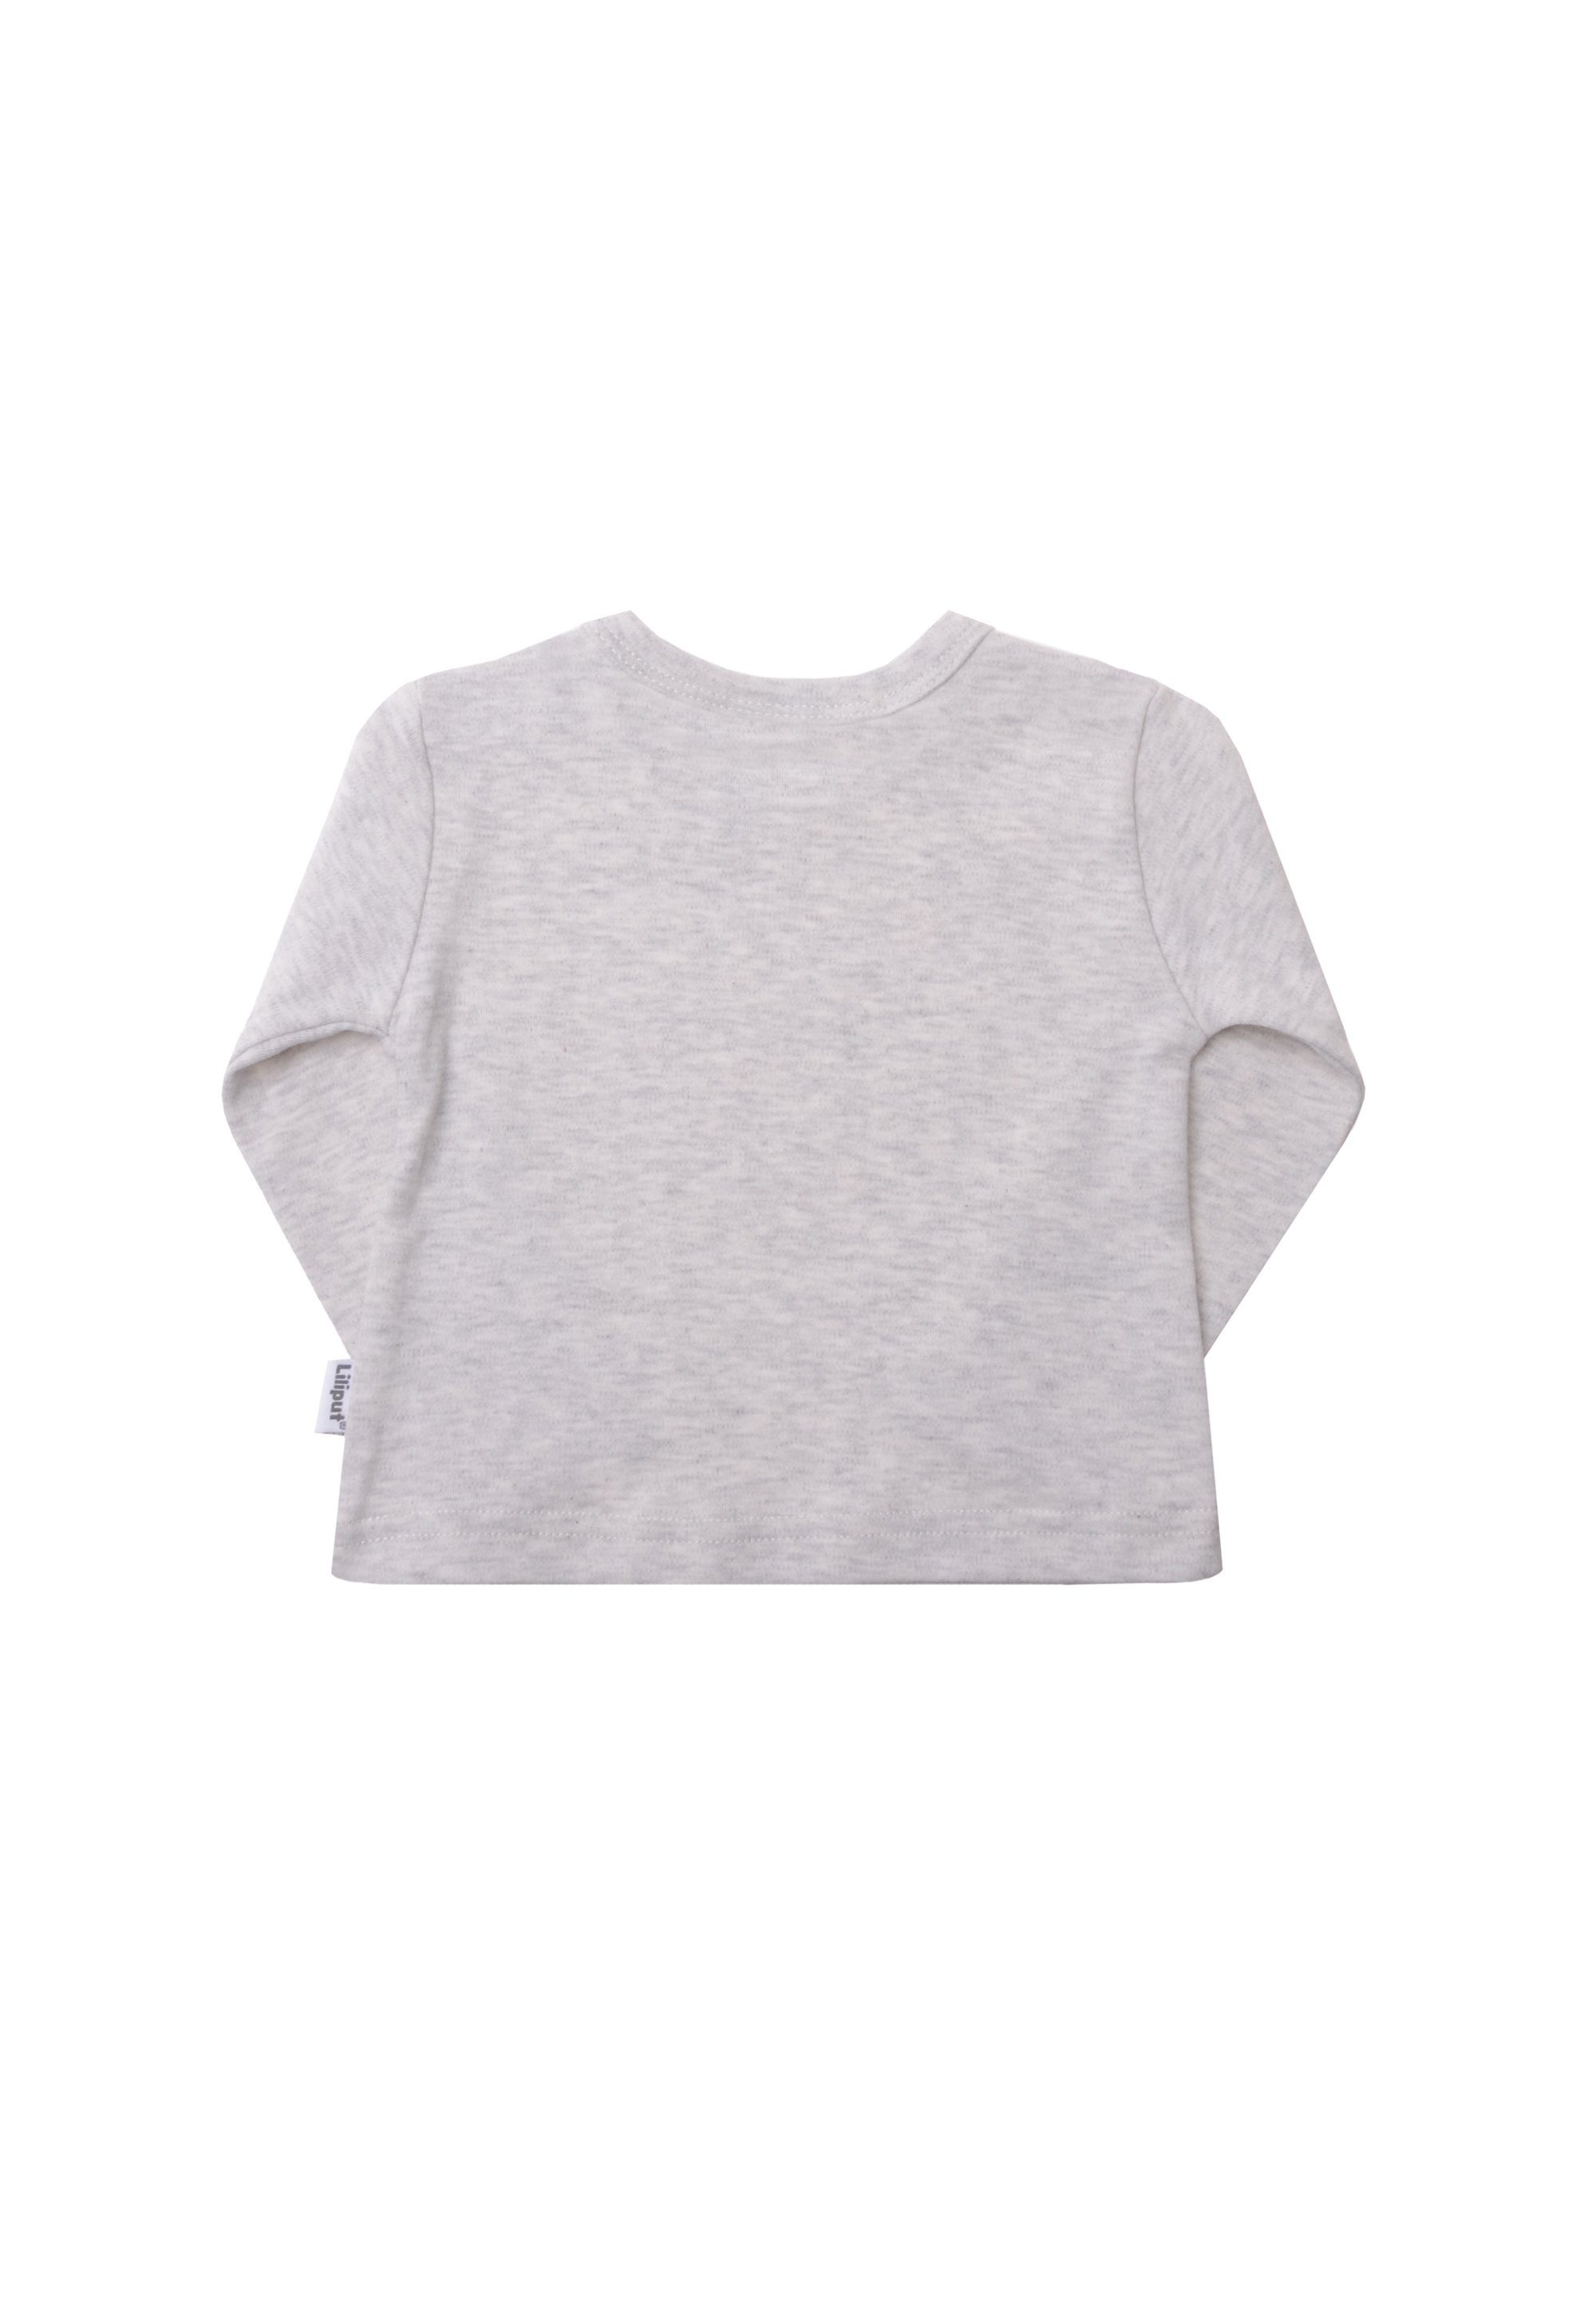 Liliput T-Shirt (3-tlg) Schulterbereich im Druckknöpfen Mit